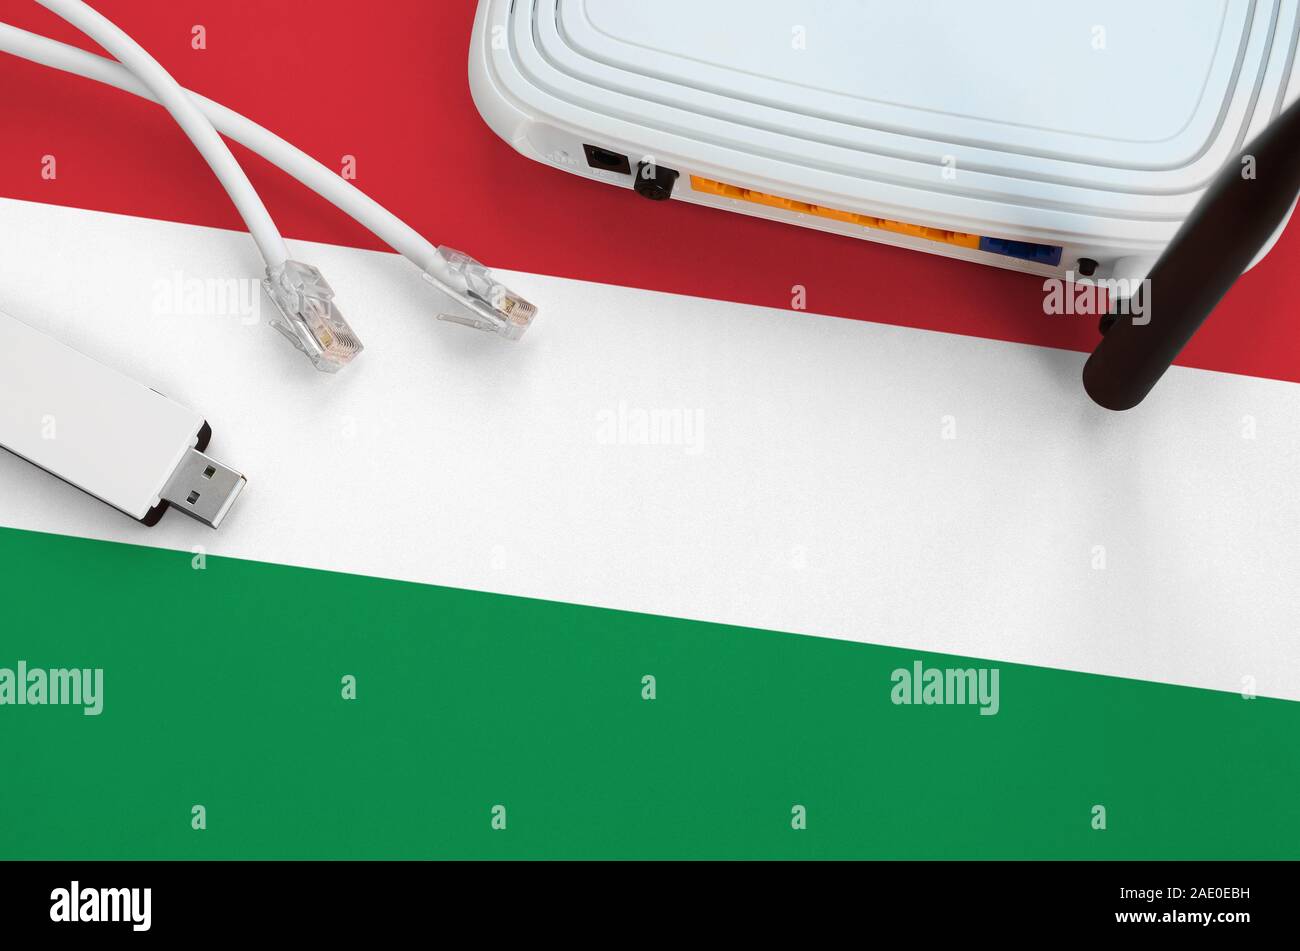 Ungarn Flagge auf Tabelle mit Internet rj45 kabel dargestellt,  Wireless-USB-WLAN-Adapter und Router. Internetverbindung Konzept  Stockfotografie - Alamy